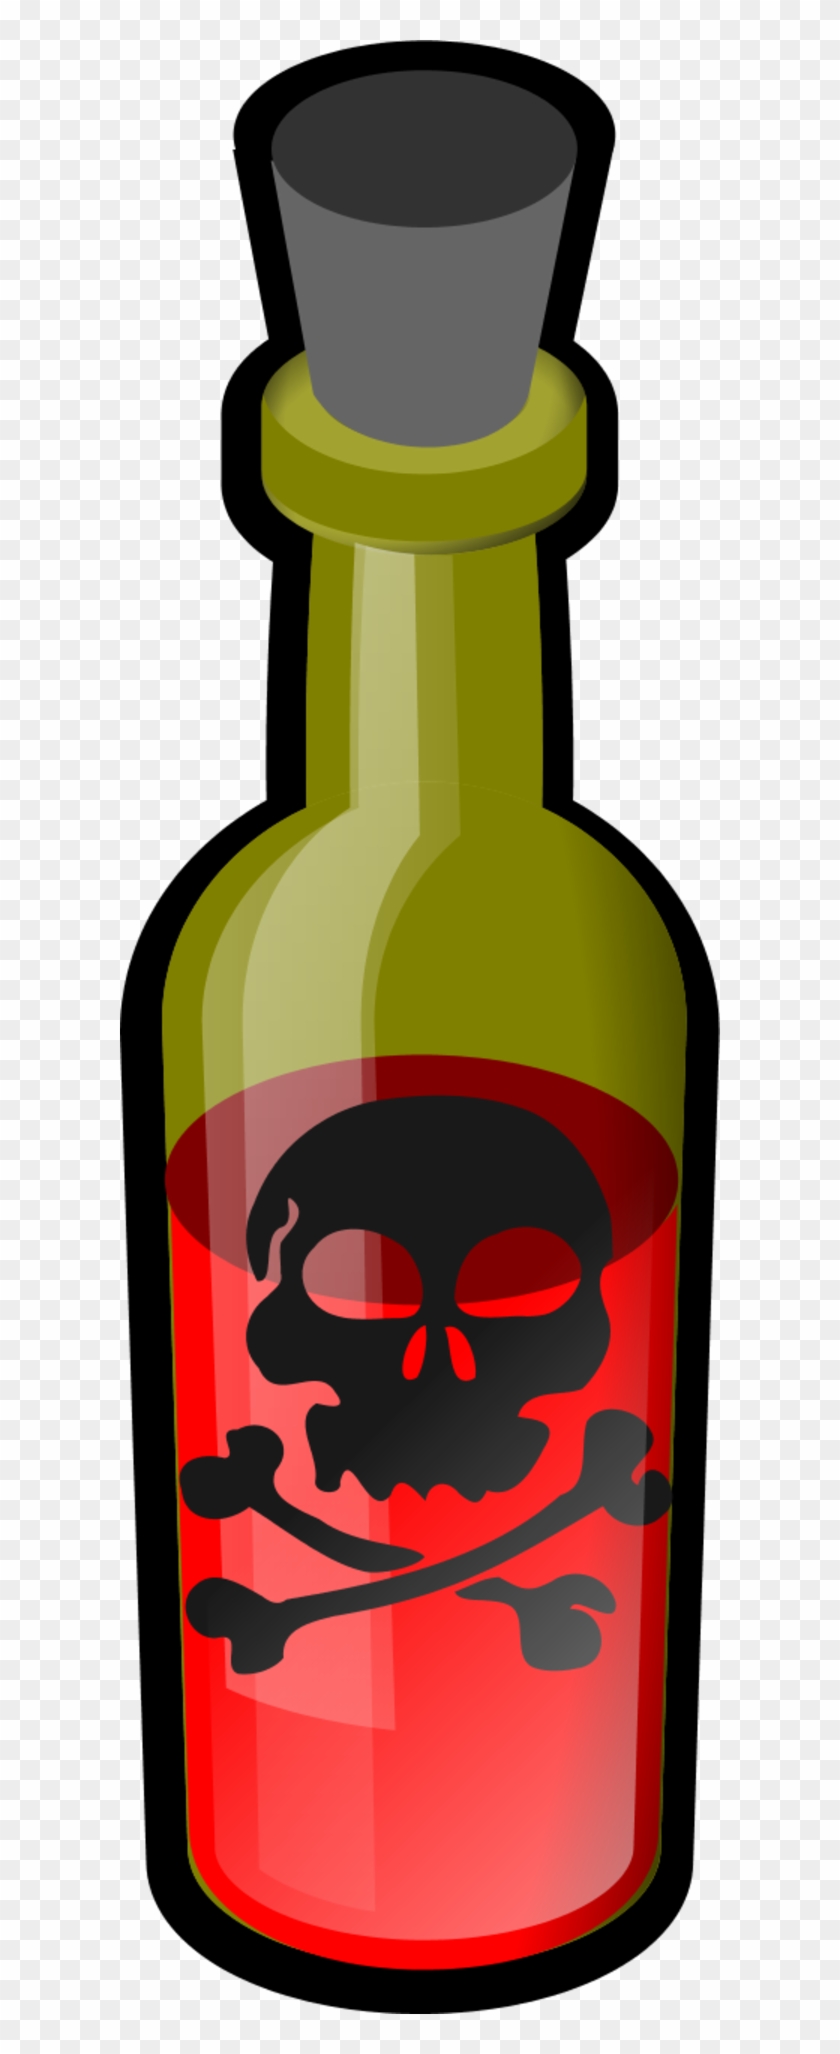 Poison Bottle Black Simple Icon - Poison Bottle Clip Art #220591